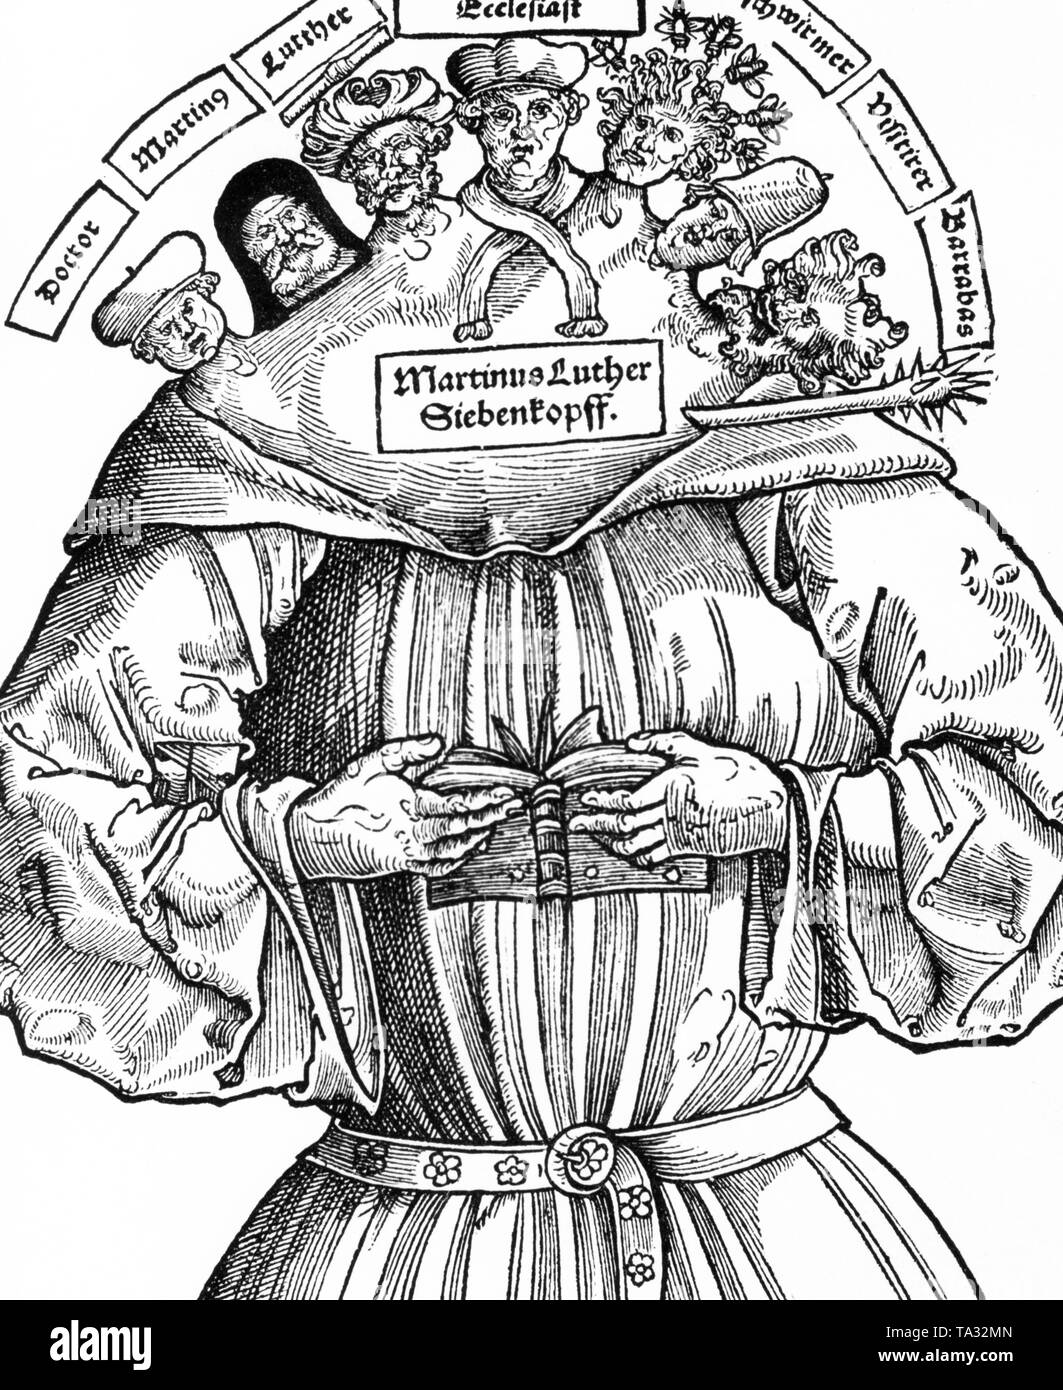 Une caricature de Martin Luther intitulée "Luther pour Siebenkopff' à partir d'un tract contre la réforme. C'était le titre du drame picutre 'Die sieben Koepfe Martin Luthers acht von hohen Sachen des christlichen Glaubens'. Banque D'Images